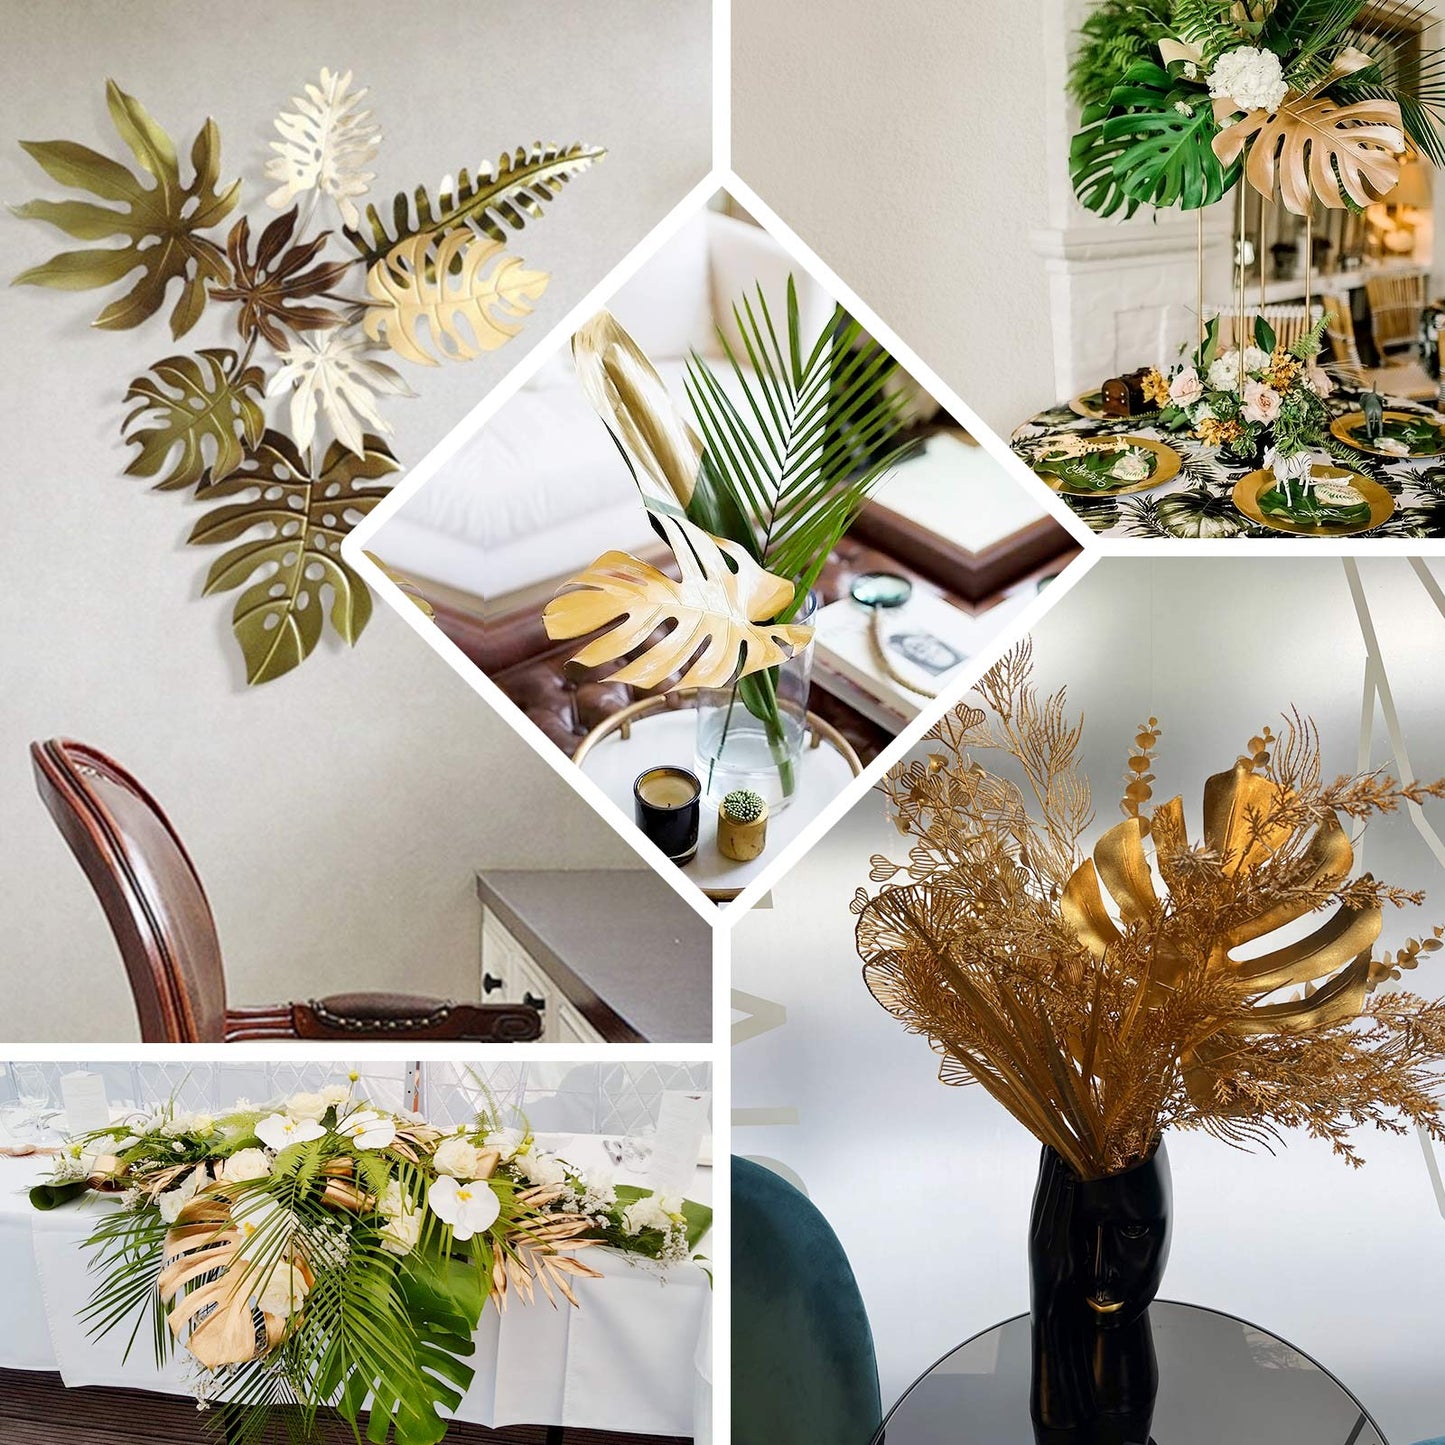 3 Pack Shiny Golden Artificial Tropical Plant Palm Leaf Stems, Faux Monstera Leaves, Floral Arrangements Table Centerpiece Decor 29"